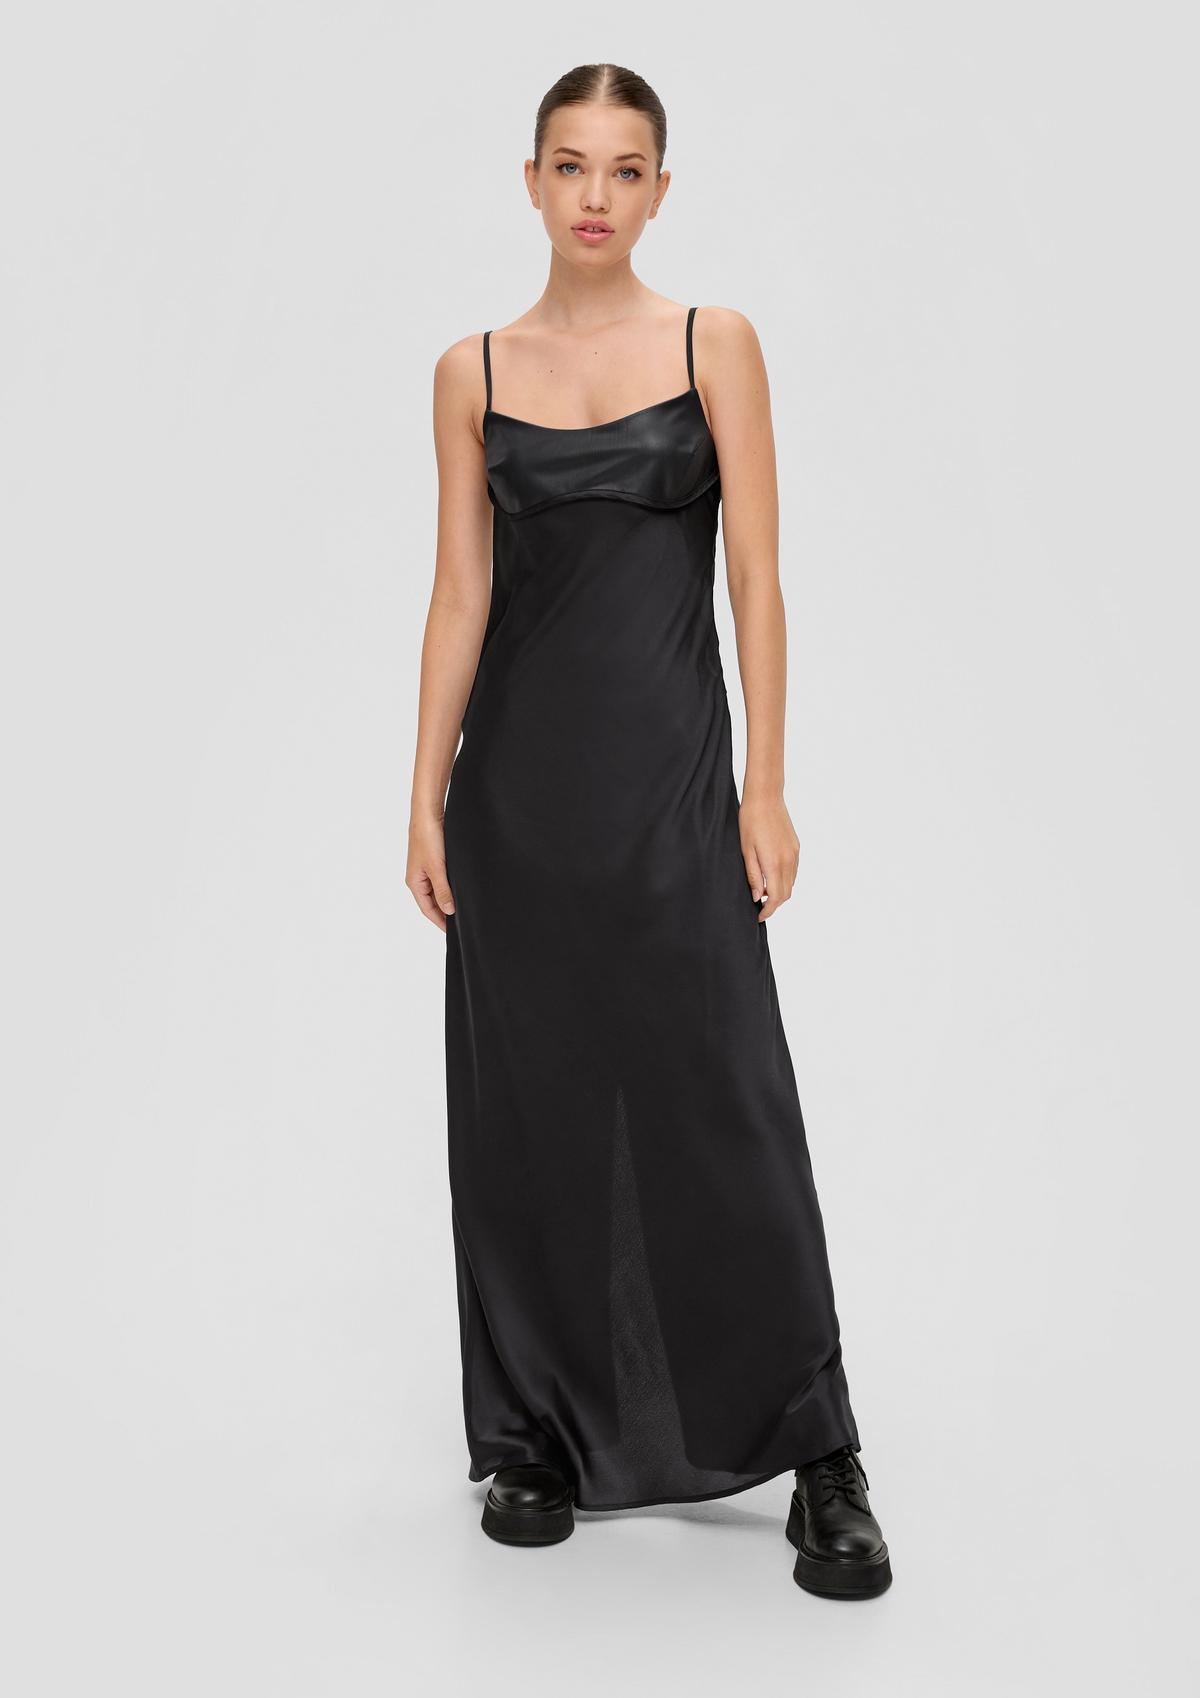 Shop maxi dresses for women now online